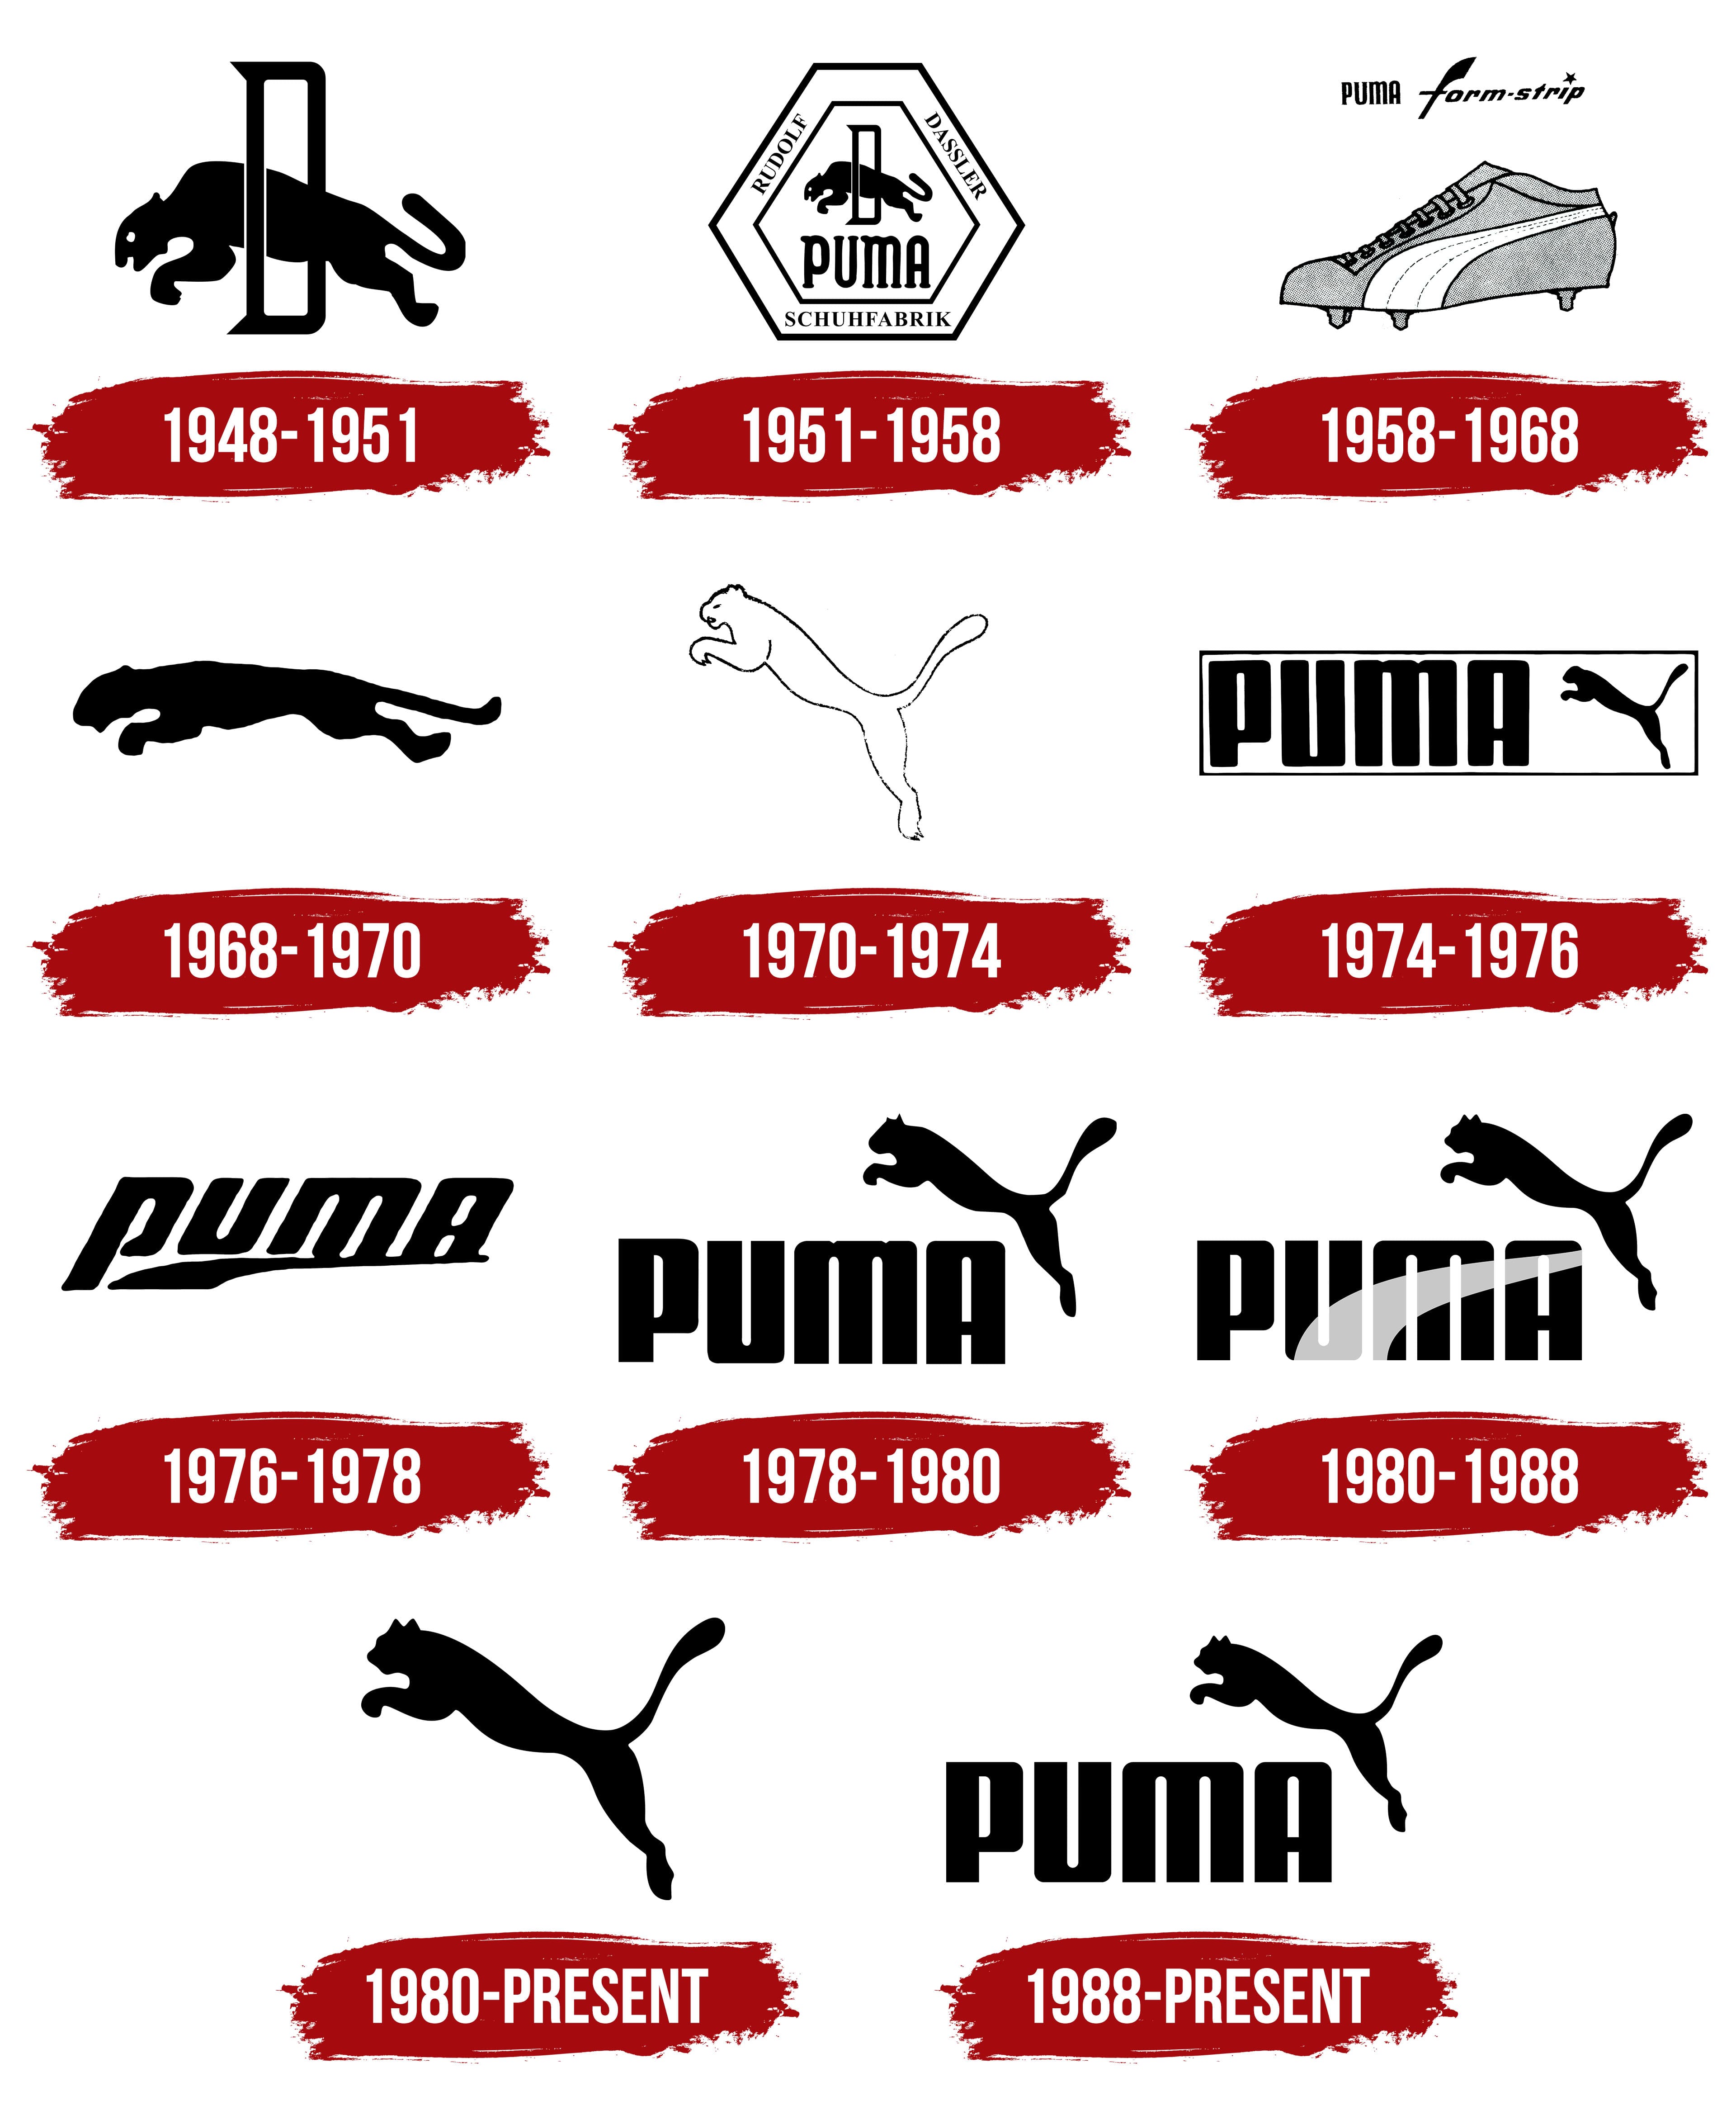 Logo De Puma La Historia Y El Significado Del Logotipo La Marca Y El ...